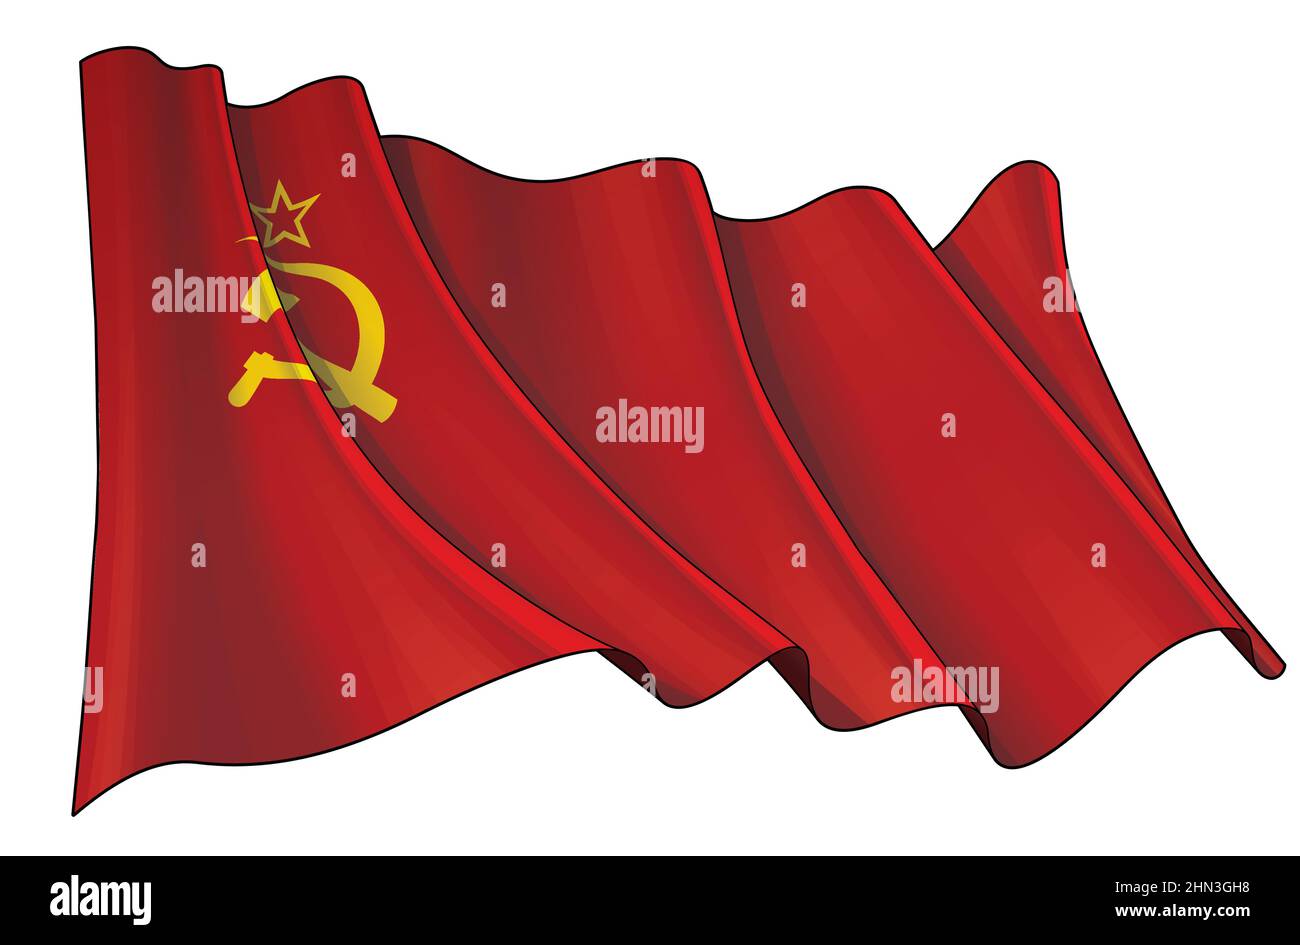 Illustration vectorielle d'un drapeau agitant de l'Union soviétique pendant la Seconde Guerre mondiale. Tous les éléments sont soigneusement définis sur des couches et des groupes bien définis. Sur un sépia, sur un autre Illustration de Vecteur